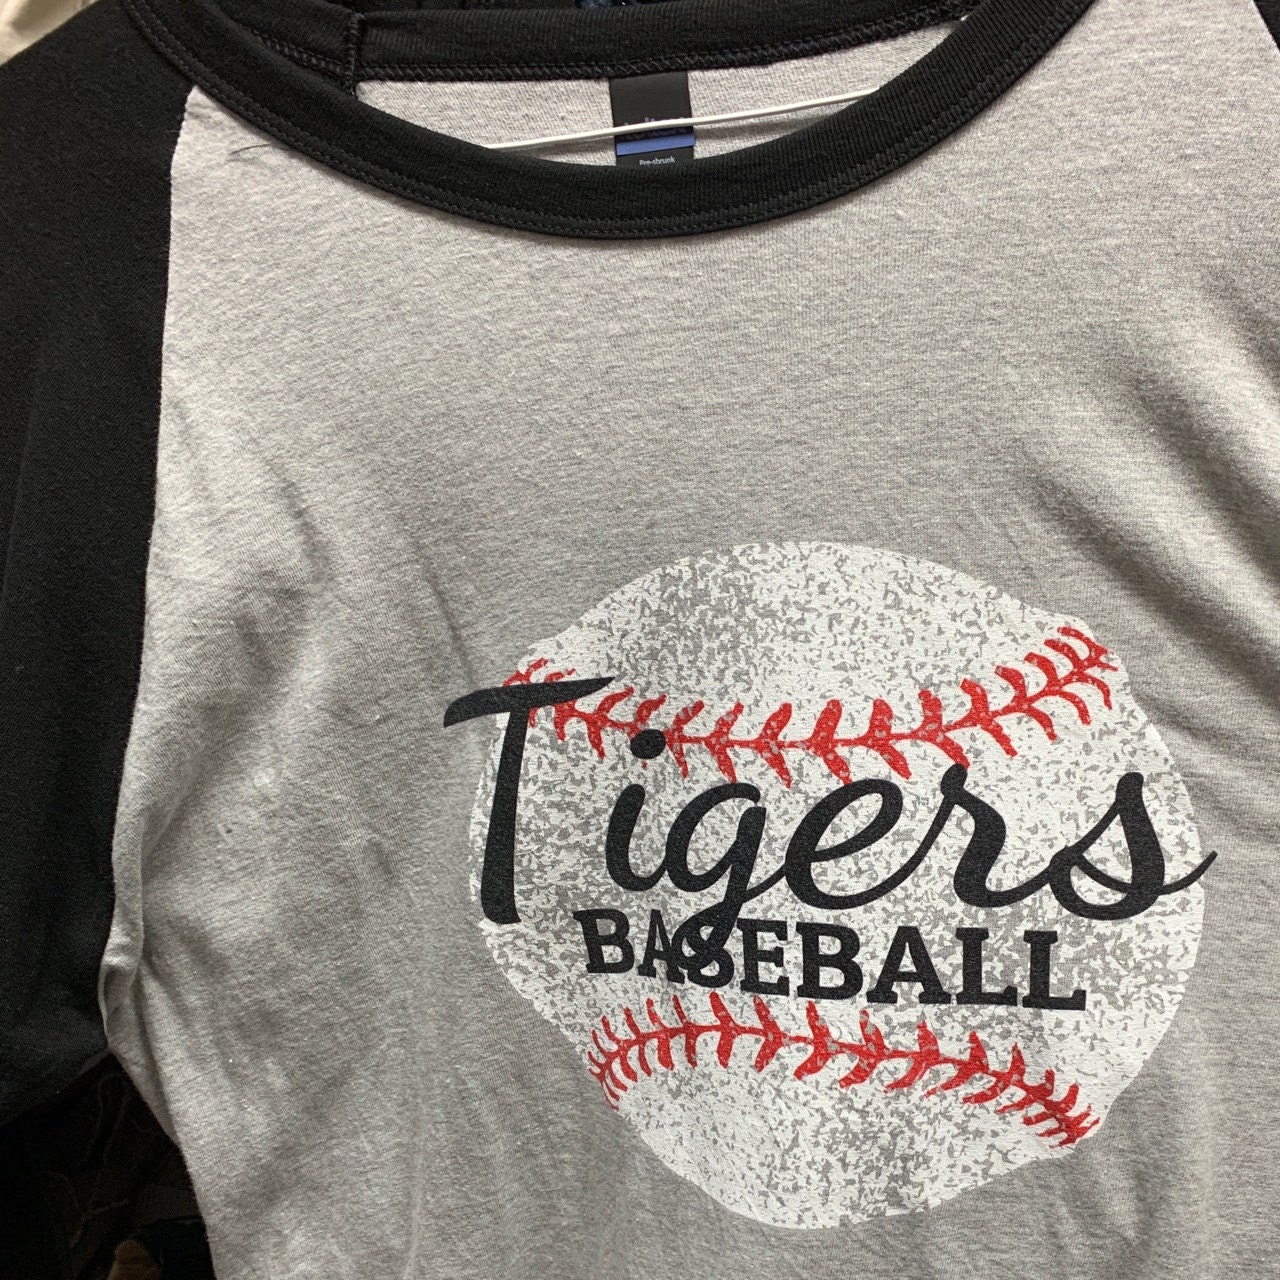 custom baseball shirts for women